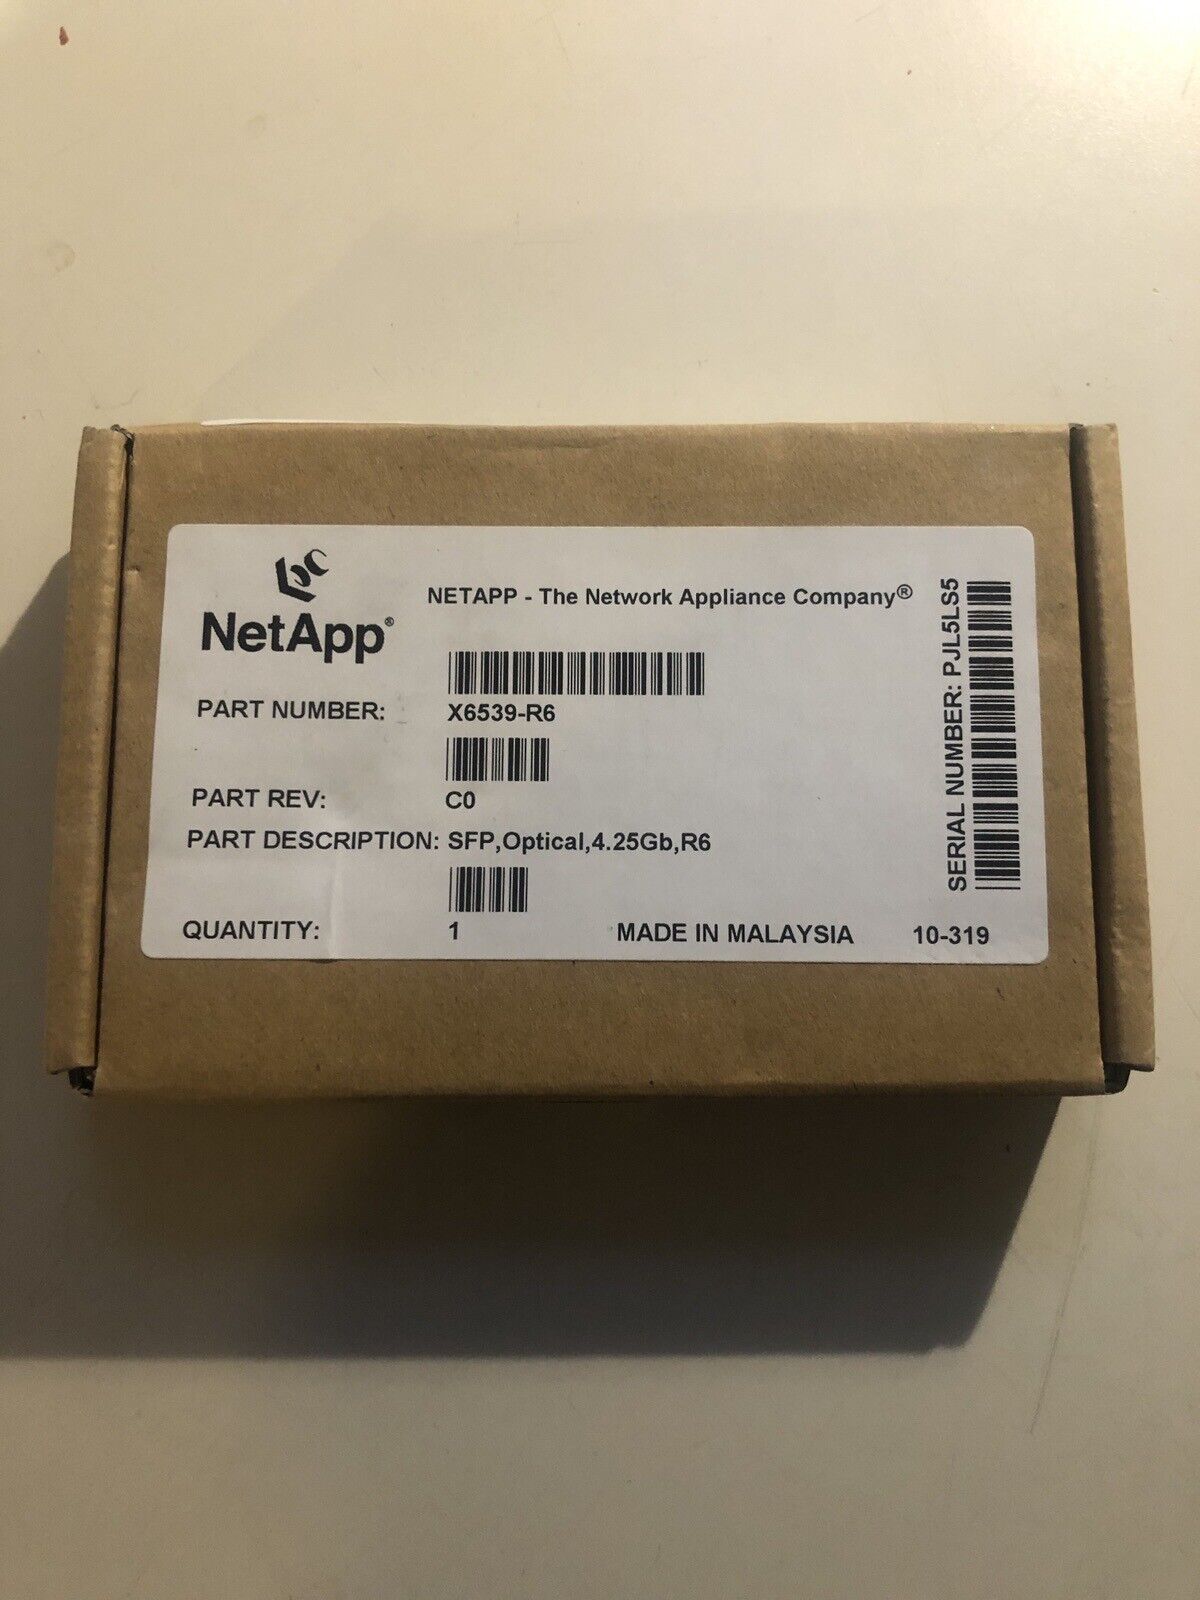 NetApp X6539-R6 SFP Optical 4.25Gb Transceiver